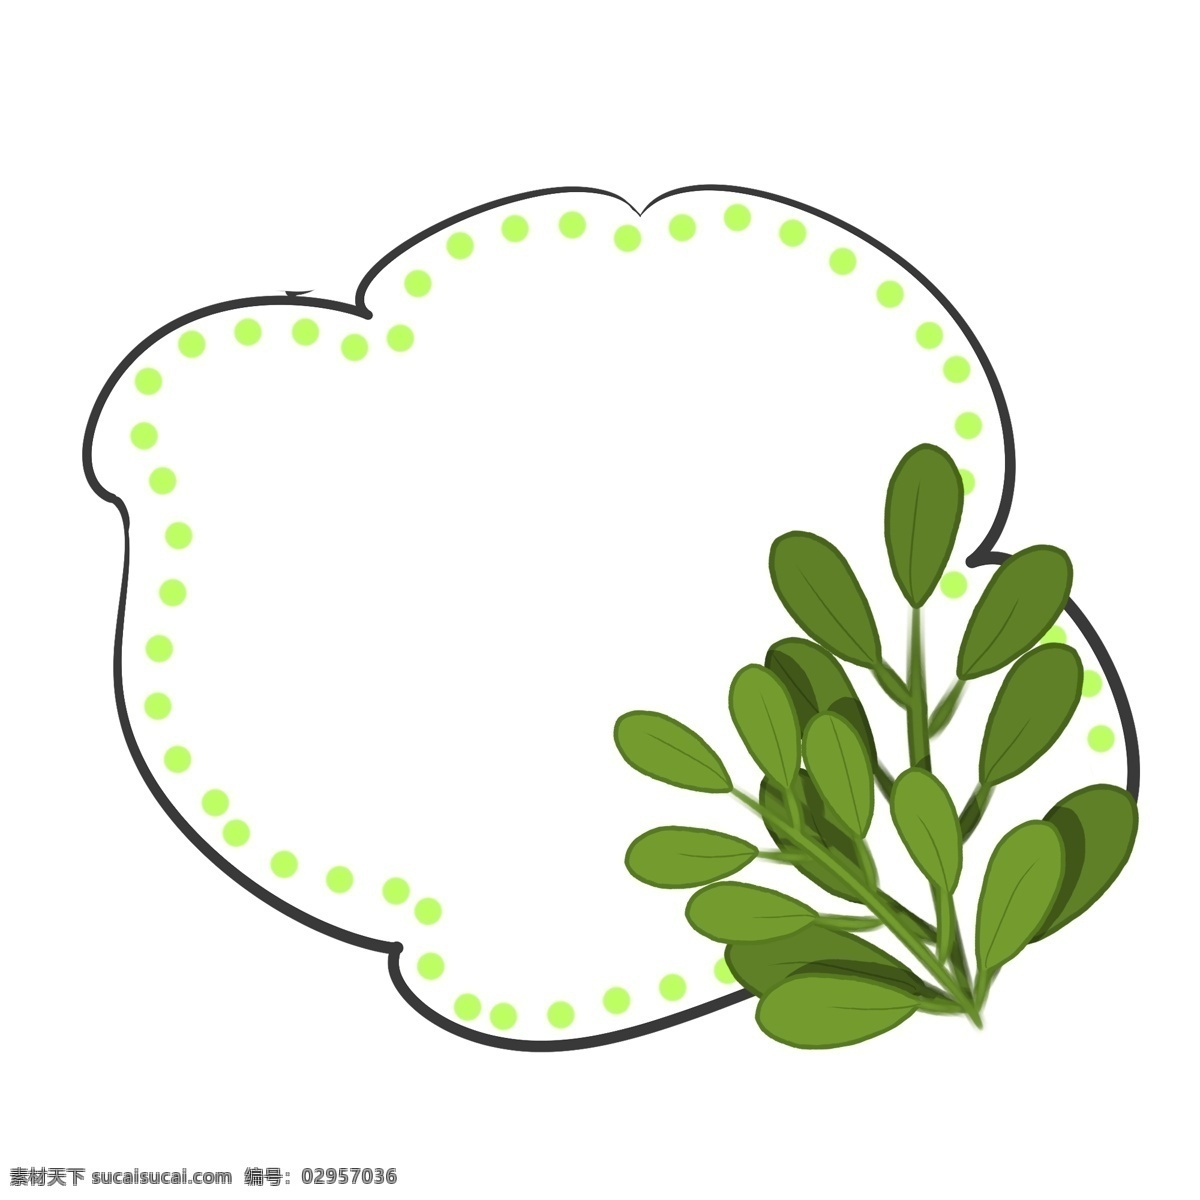 手绘 简约 蕨类植物 手绘植物 扁平 插画 树叶 树枝 绿色 装饰 装饰树叶 卡通 多株植物 简约蕨类植物